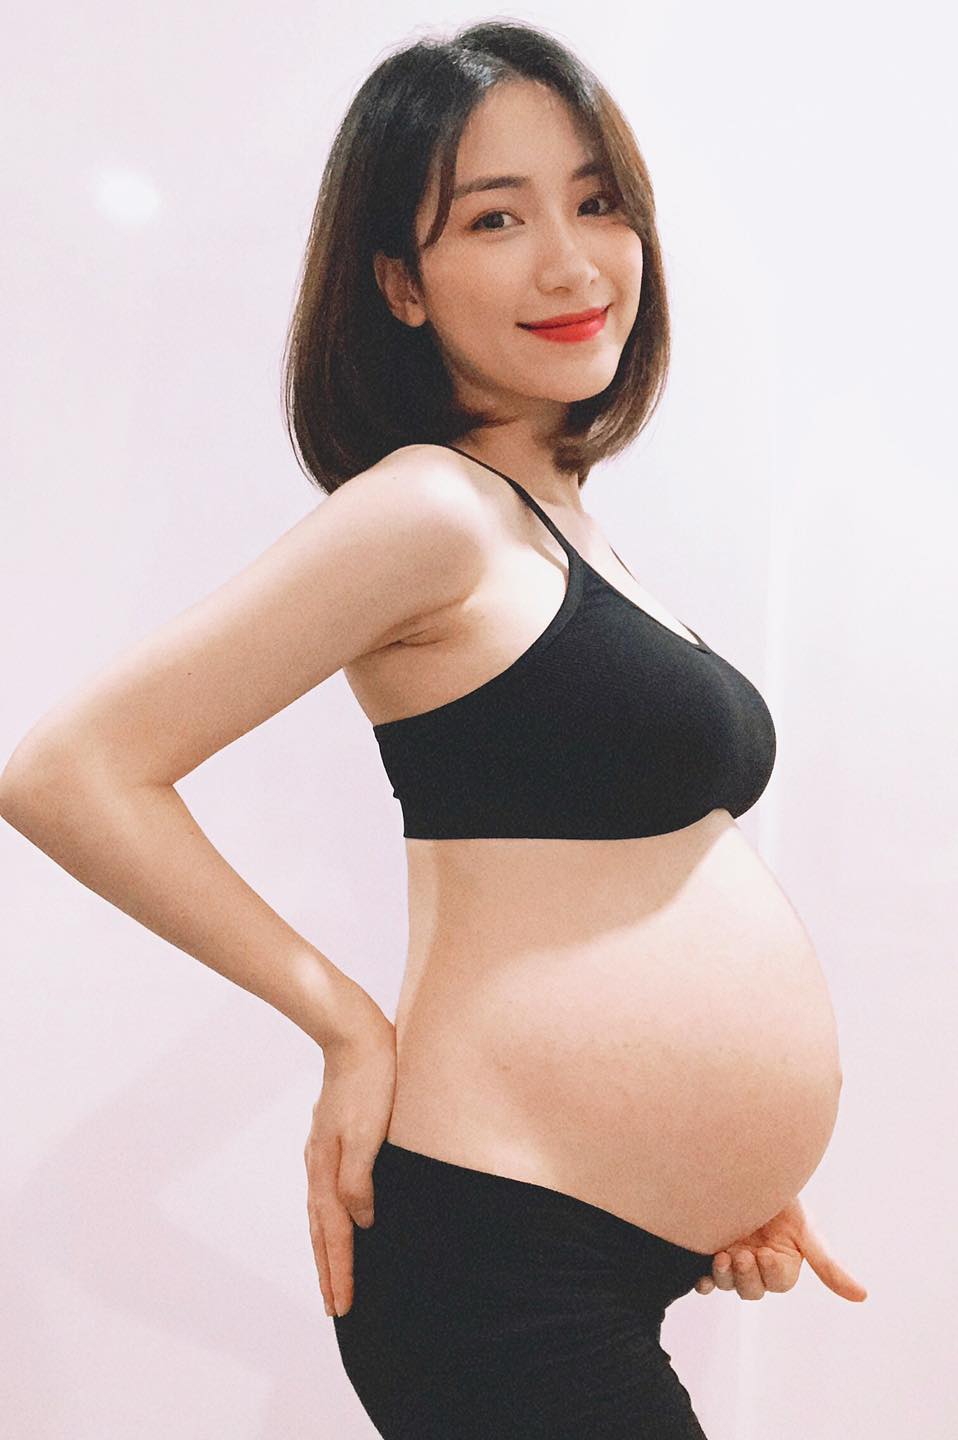 Hòa Minzy 7 tháng bầu: Người đẹp Hòa Minzy không phải chỉ là ca sĩ xinh đẹp mà còn là mẹ sắp có con. Hãy cùng xem hình ảnh của cô nàng trong giai đoạn 7 tháng mang thai và cùng chia sẻ cảm xúc về giai đoạn hiếm có này của cuộc đời.